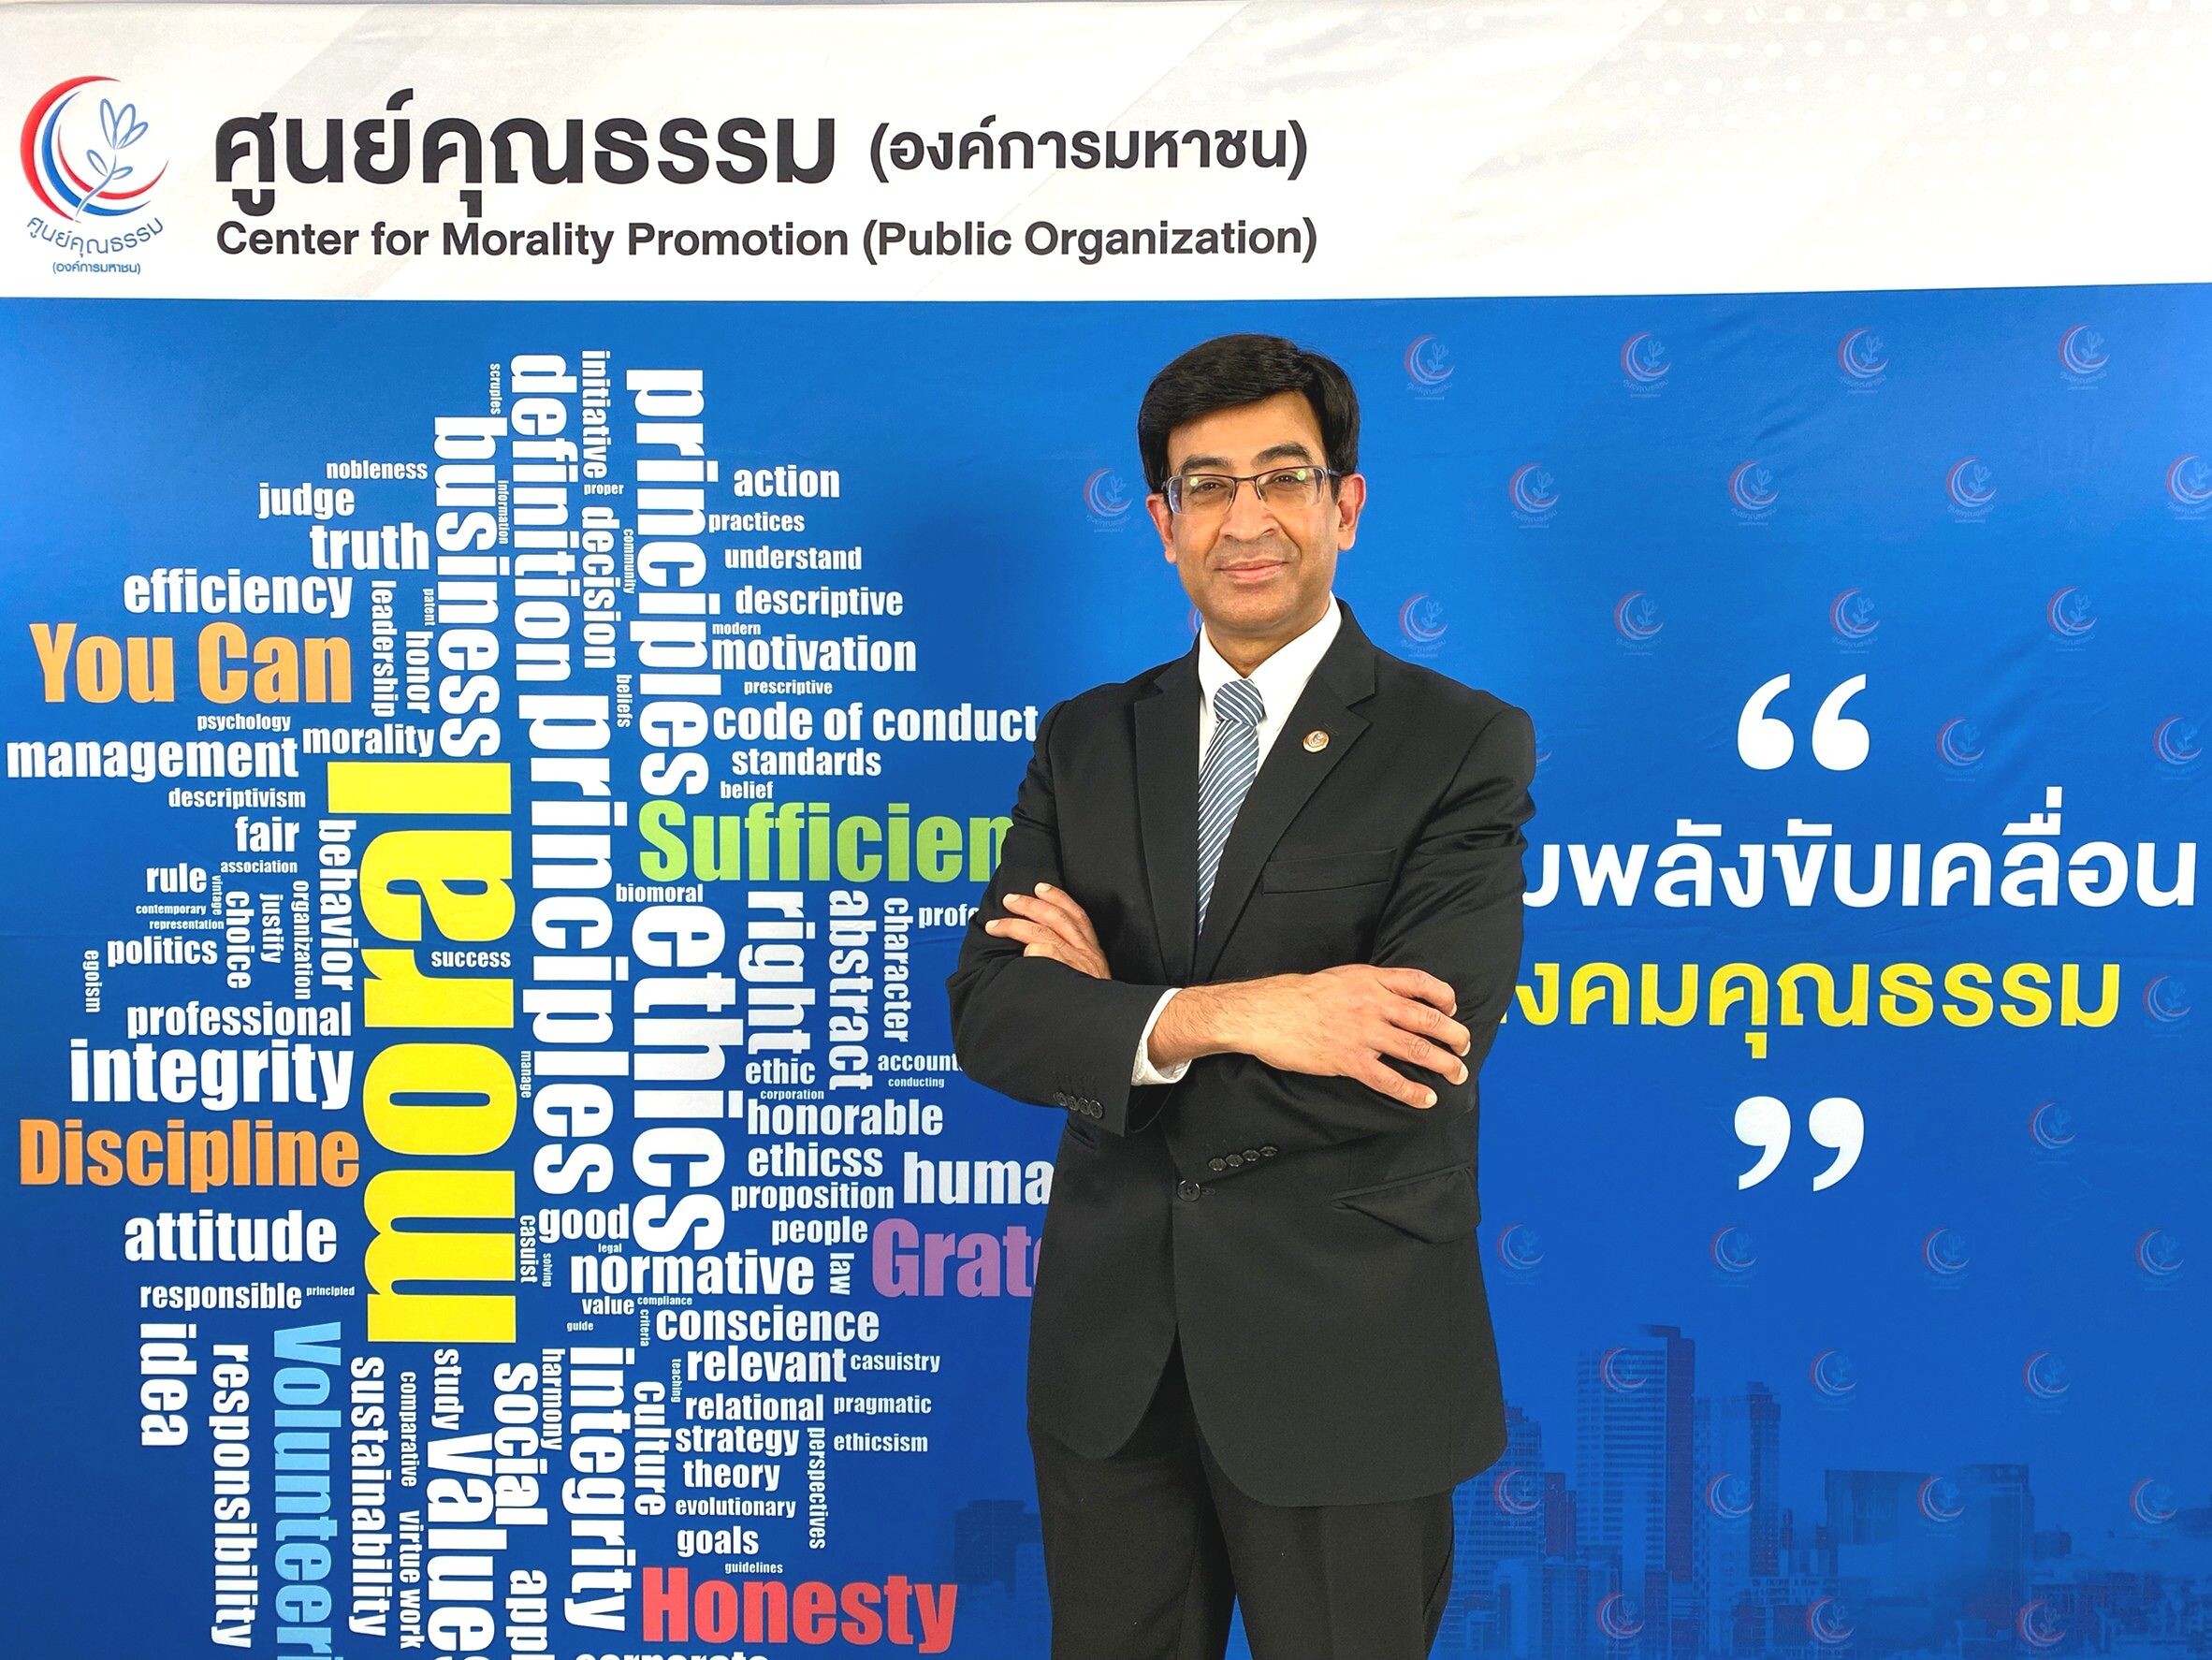 ศคธ. เปิดตัว "ดัชนีชี้วัดสถานการณ์คุณธรรม" ครั้งแรกในประเทศไทย